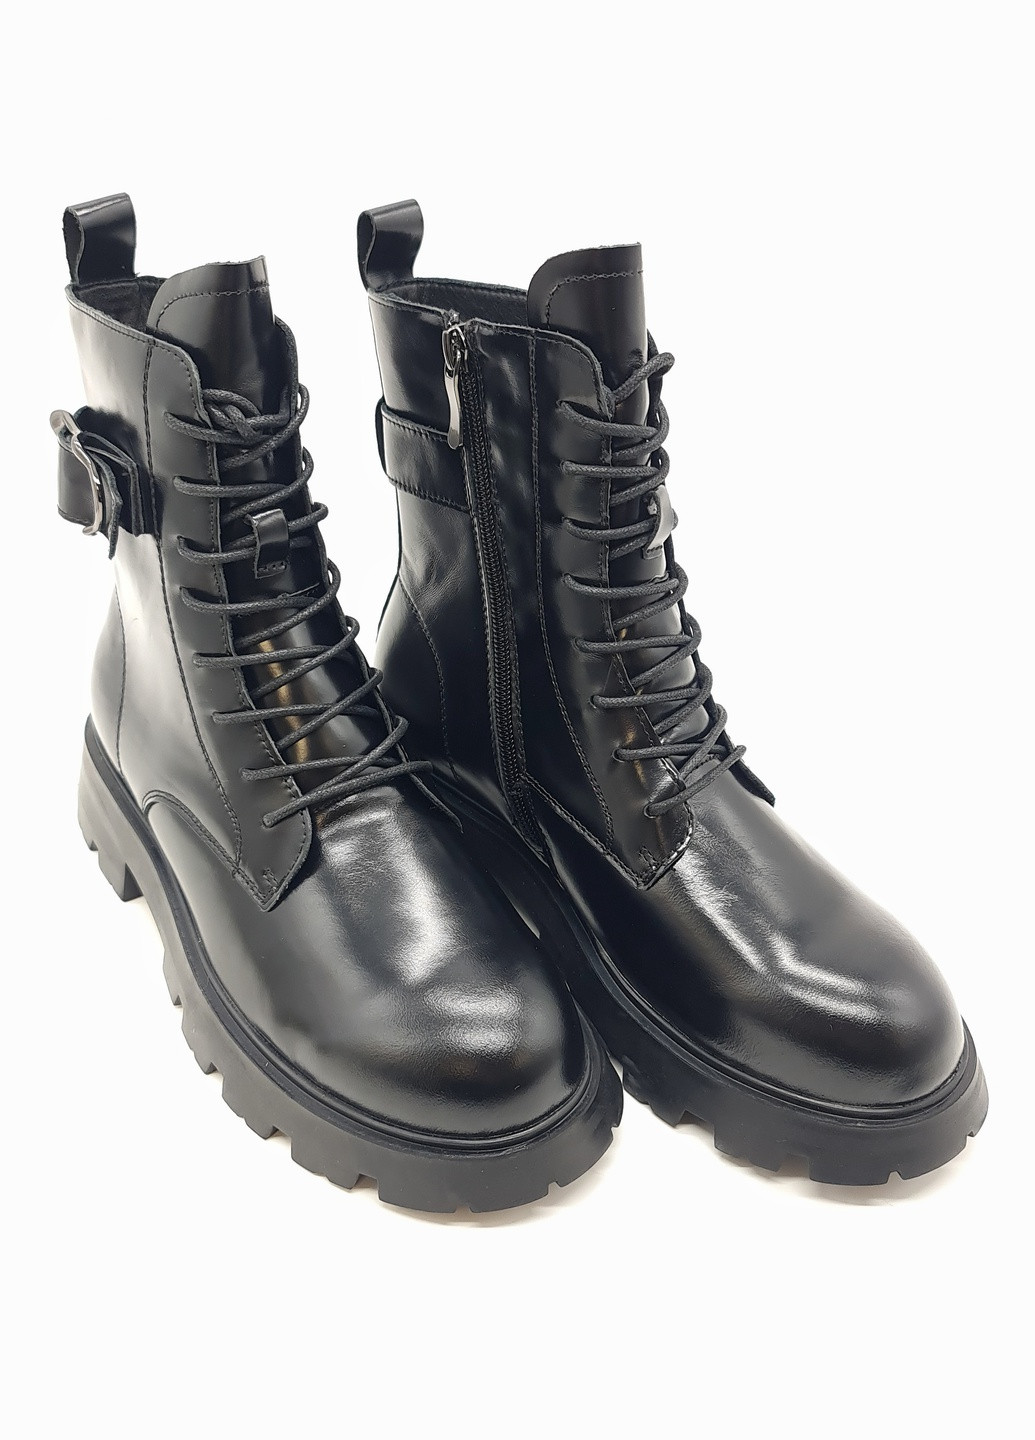 Осенние женские ботинки черные кожаные bv-13-10 23 см(р) Boss Victori